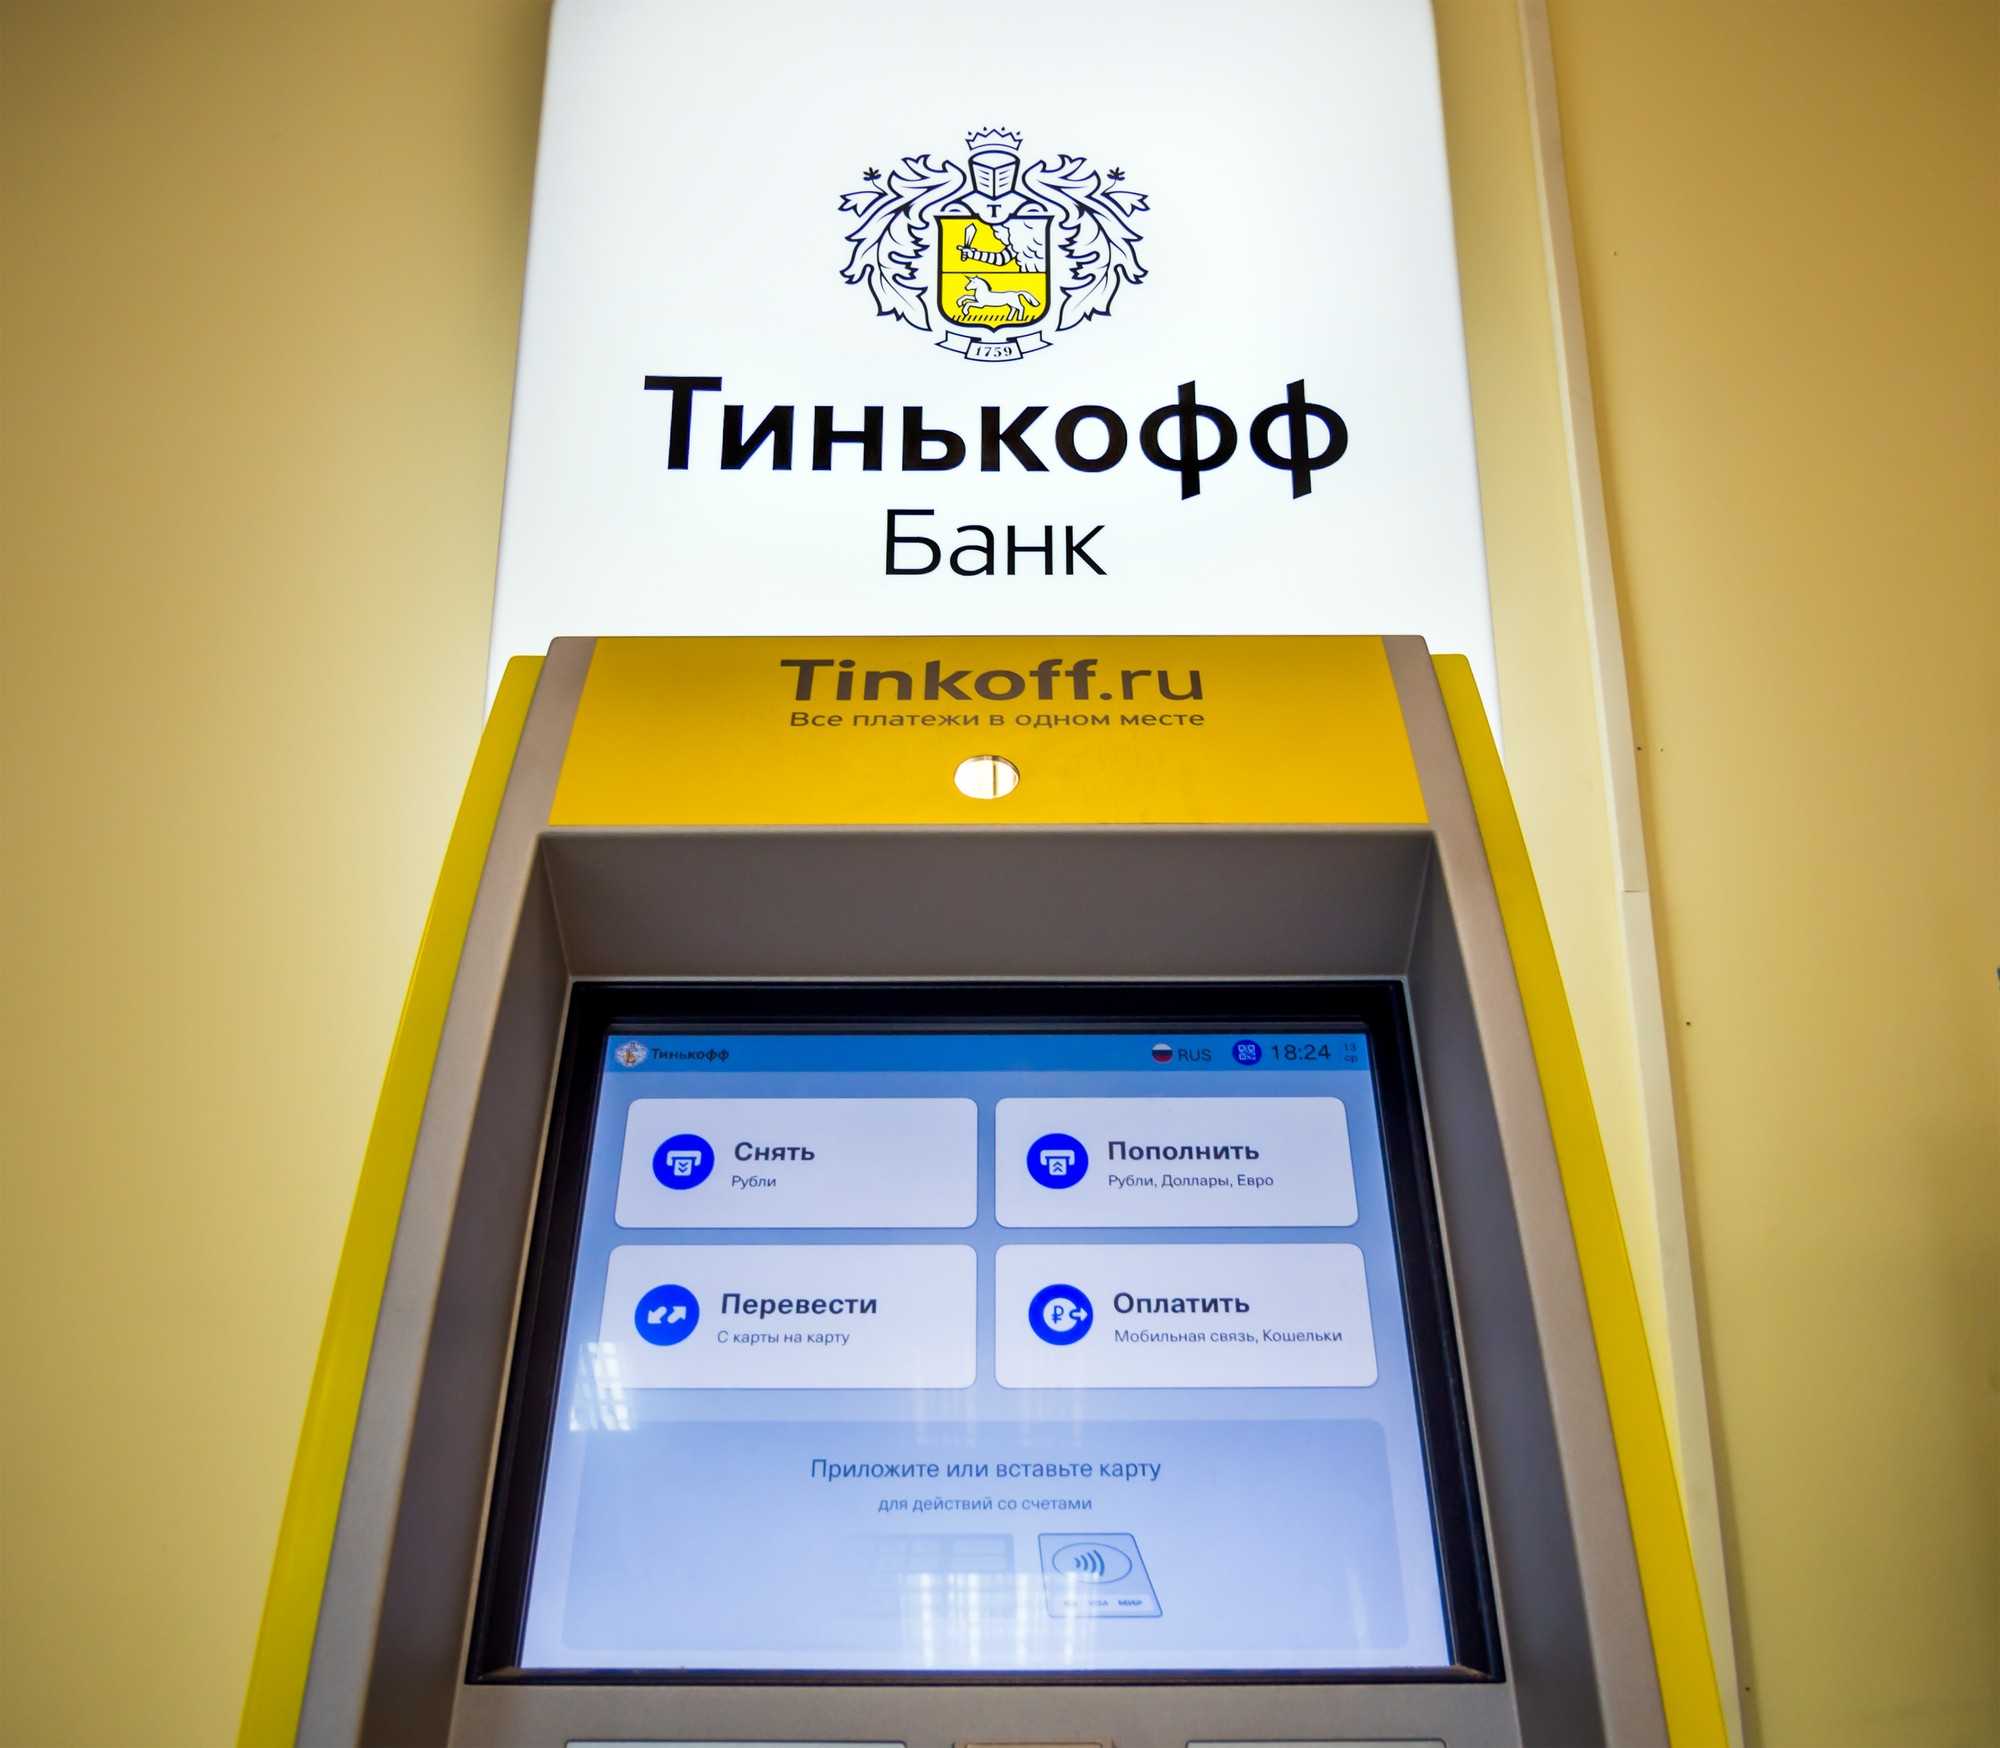 Мобильное приложение тинькофф банк для android, apple и windows